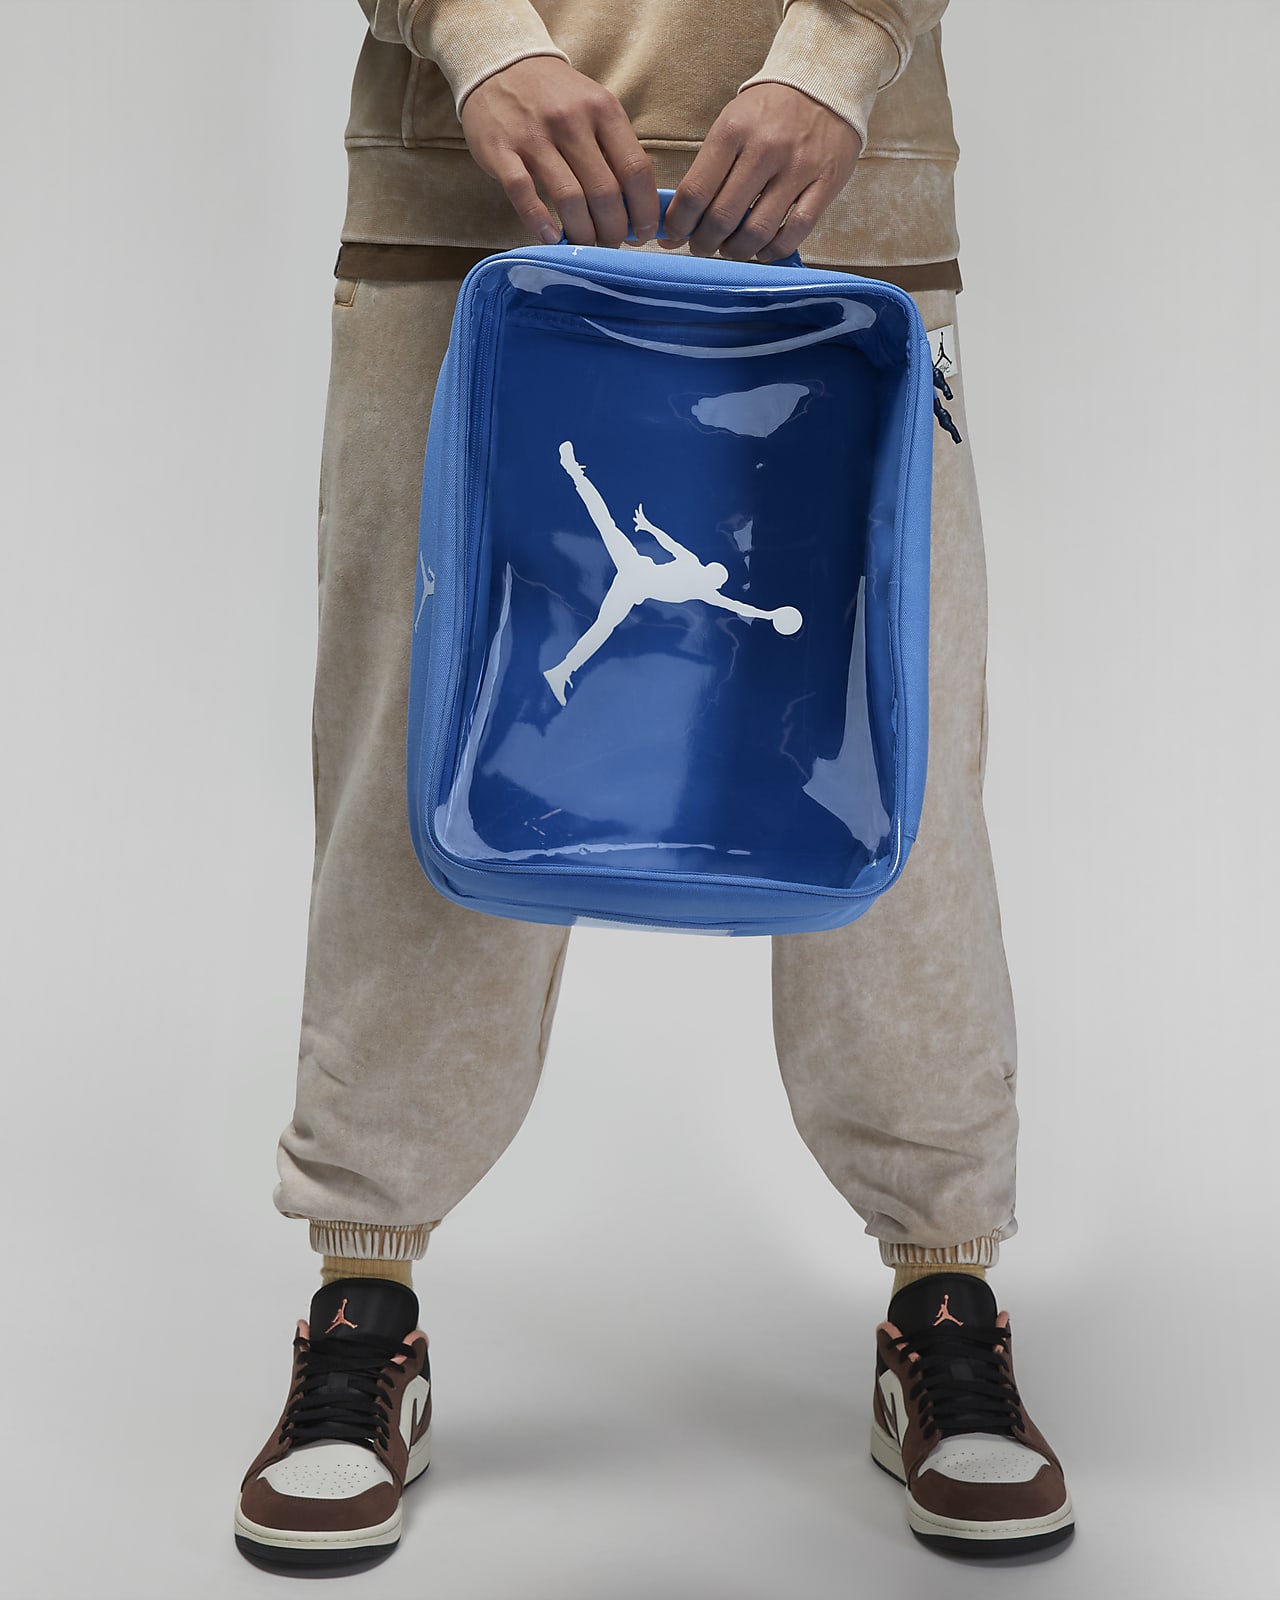 Jordan The Shoe Box Shoe Bag (13L)